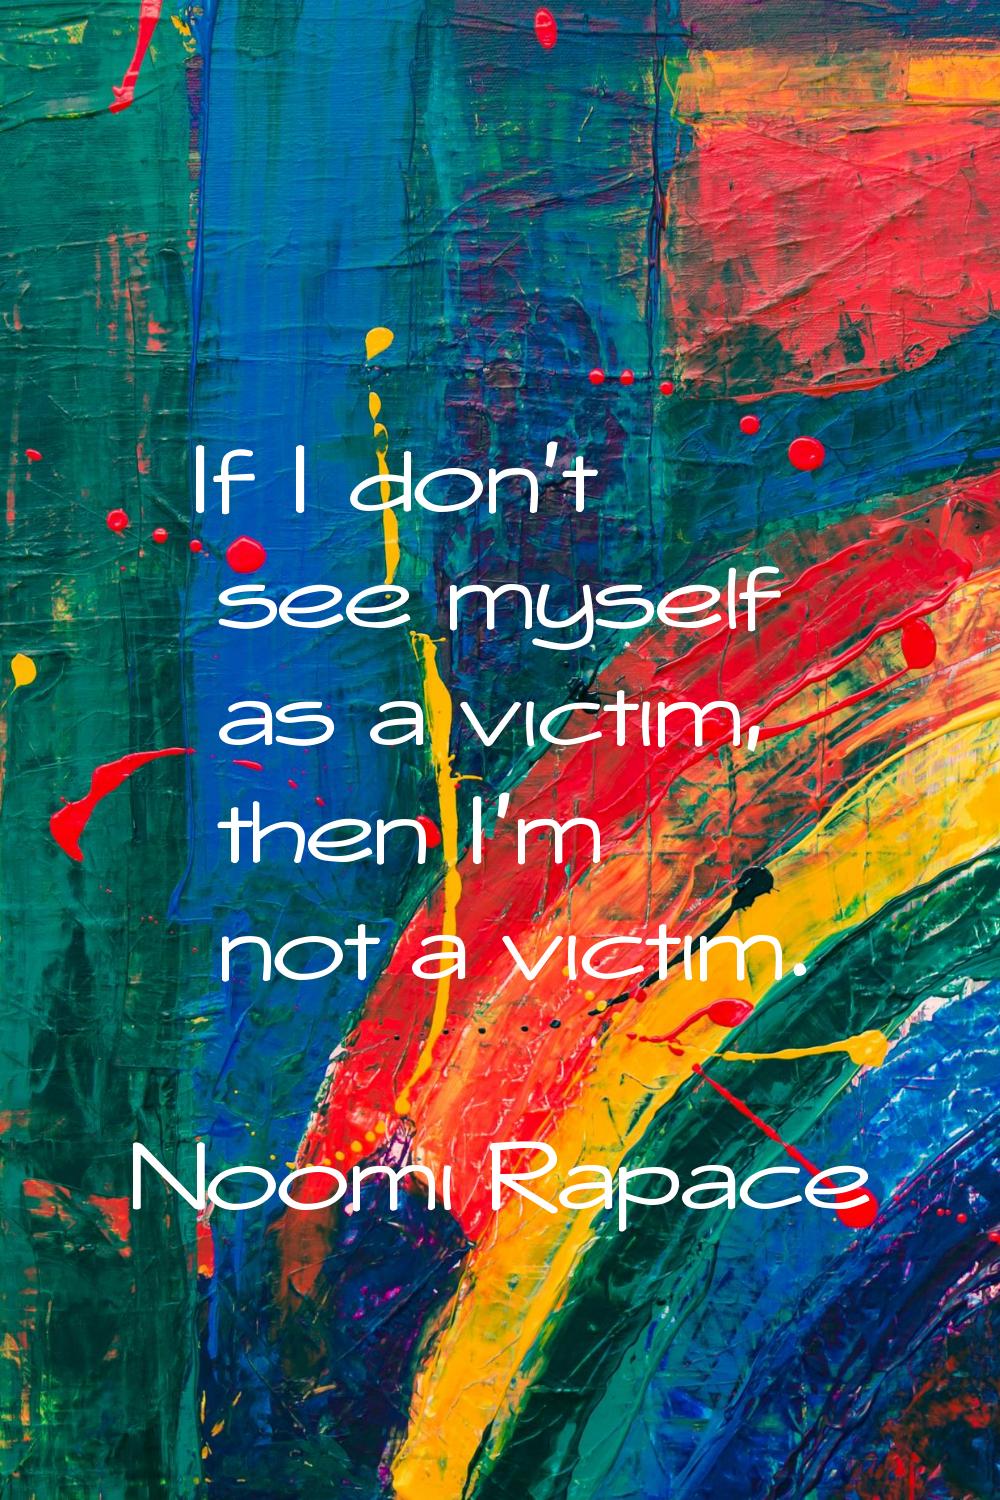 If I don't see myself as a victim, then I'm not a victim.